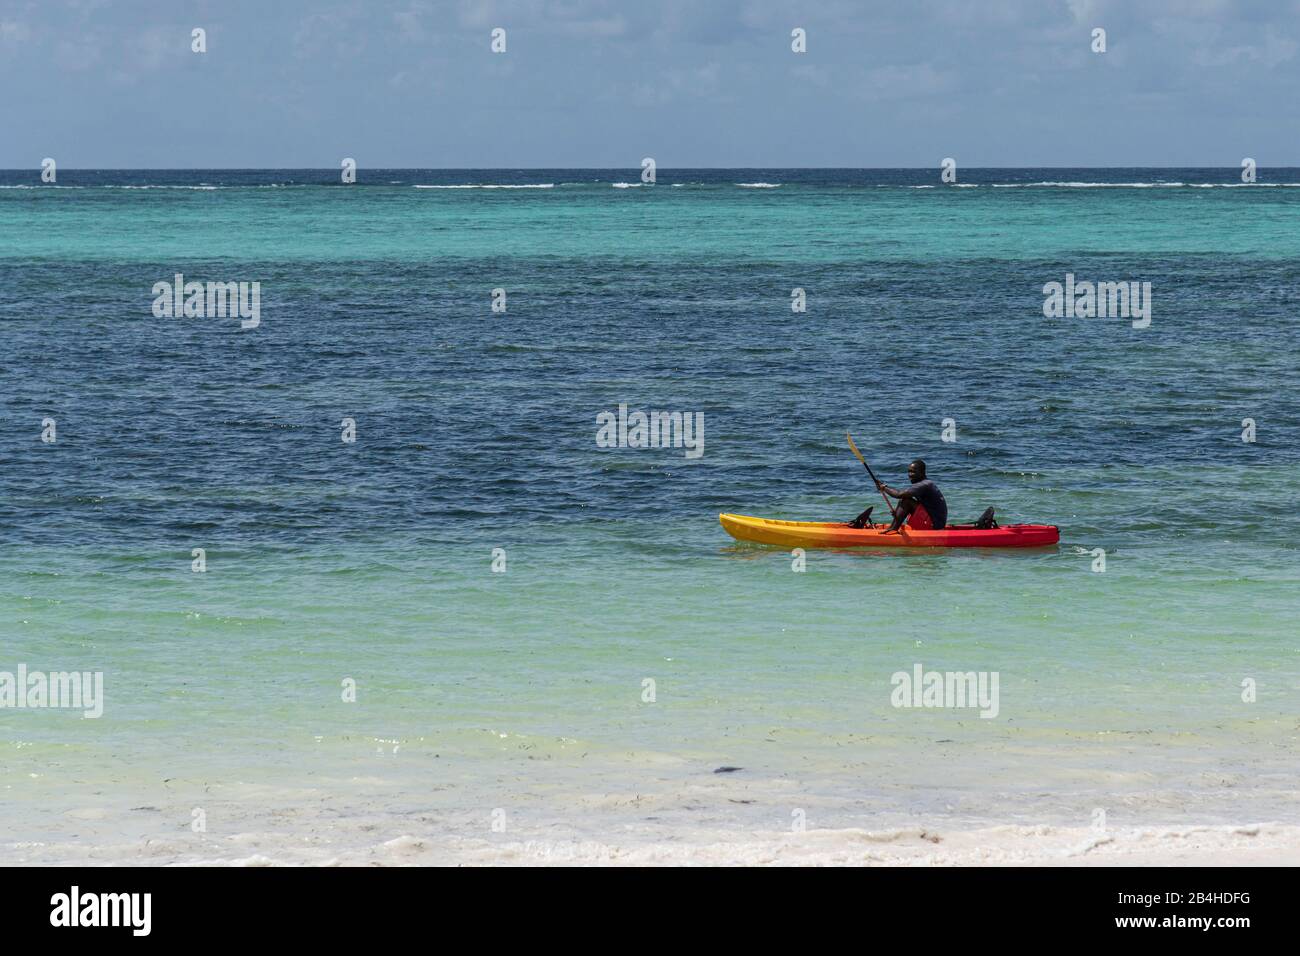 Sansibar, Tansania: Traumstrand an der Ostküste dieser afrikanischen Insel im Indischen Ozean. Paddler im Kajak. Stockfoto